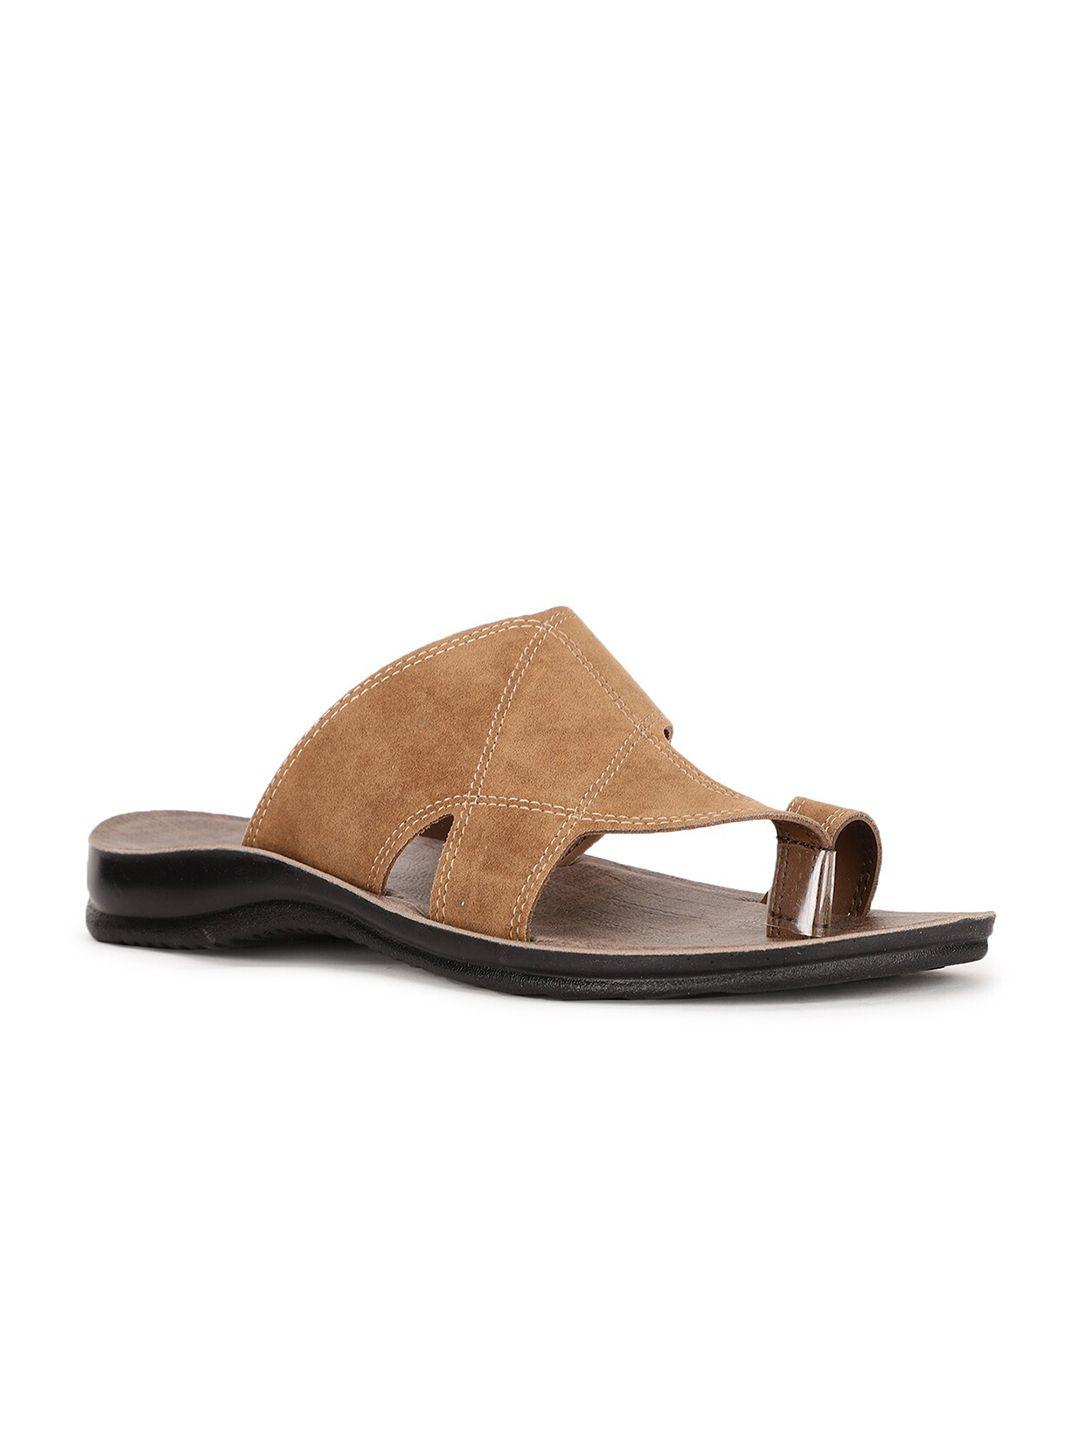 Bata Men Brown Solid Comfort Sandals